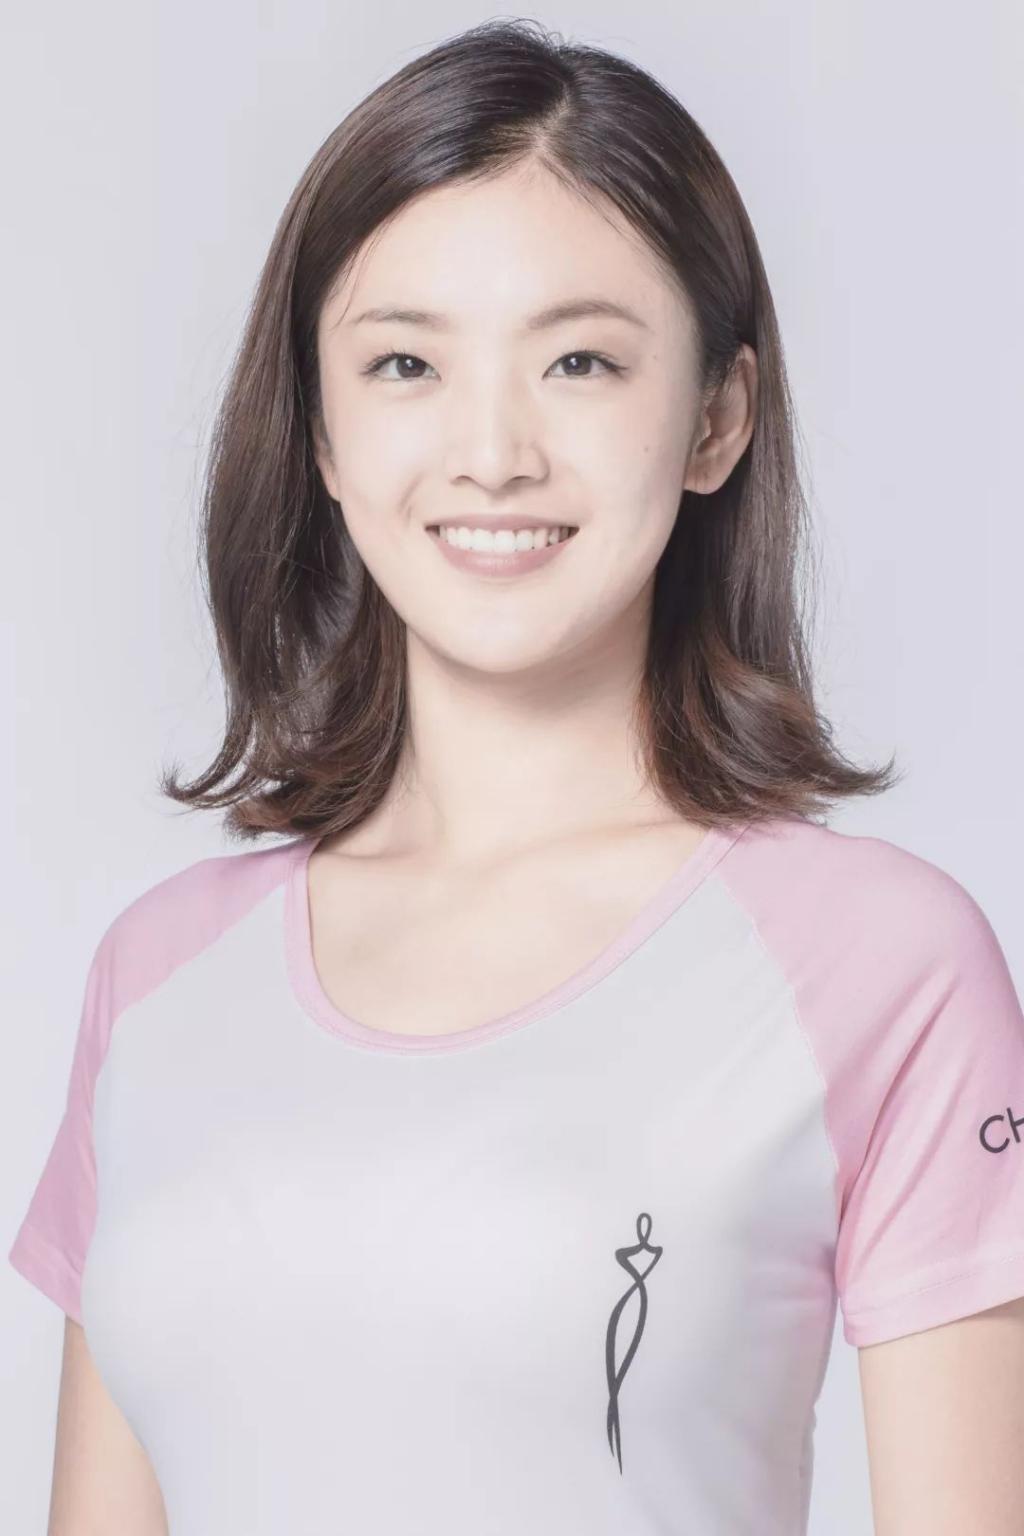 2018中华小姐环球大赛总决赛冠军卢琳